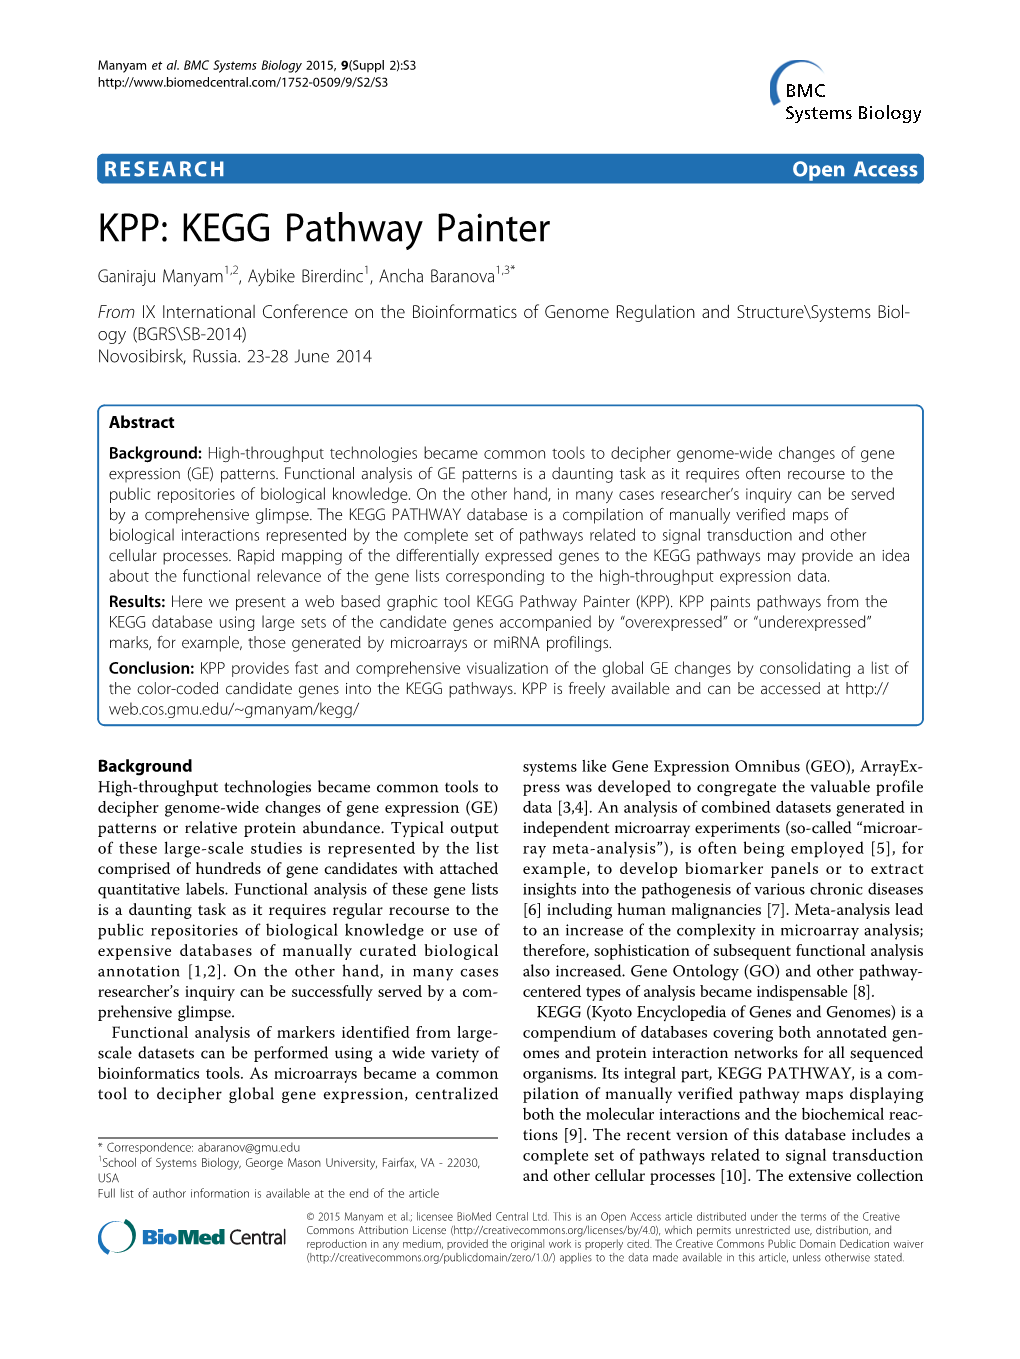 KPP: KEGG Pathway Painter